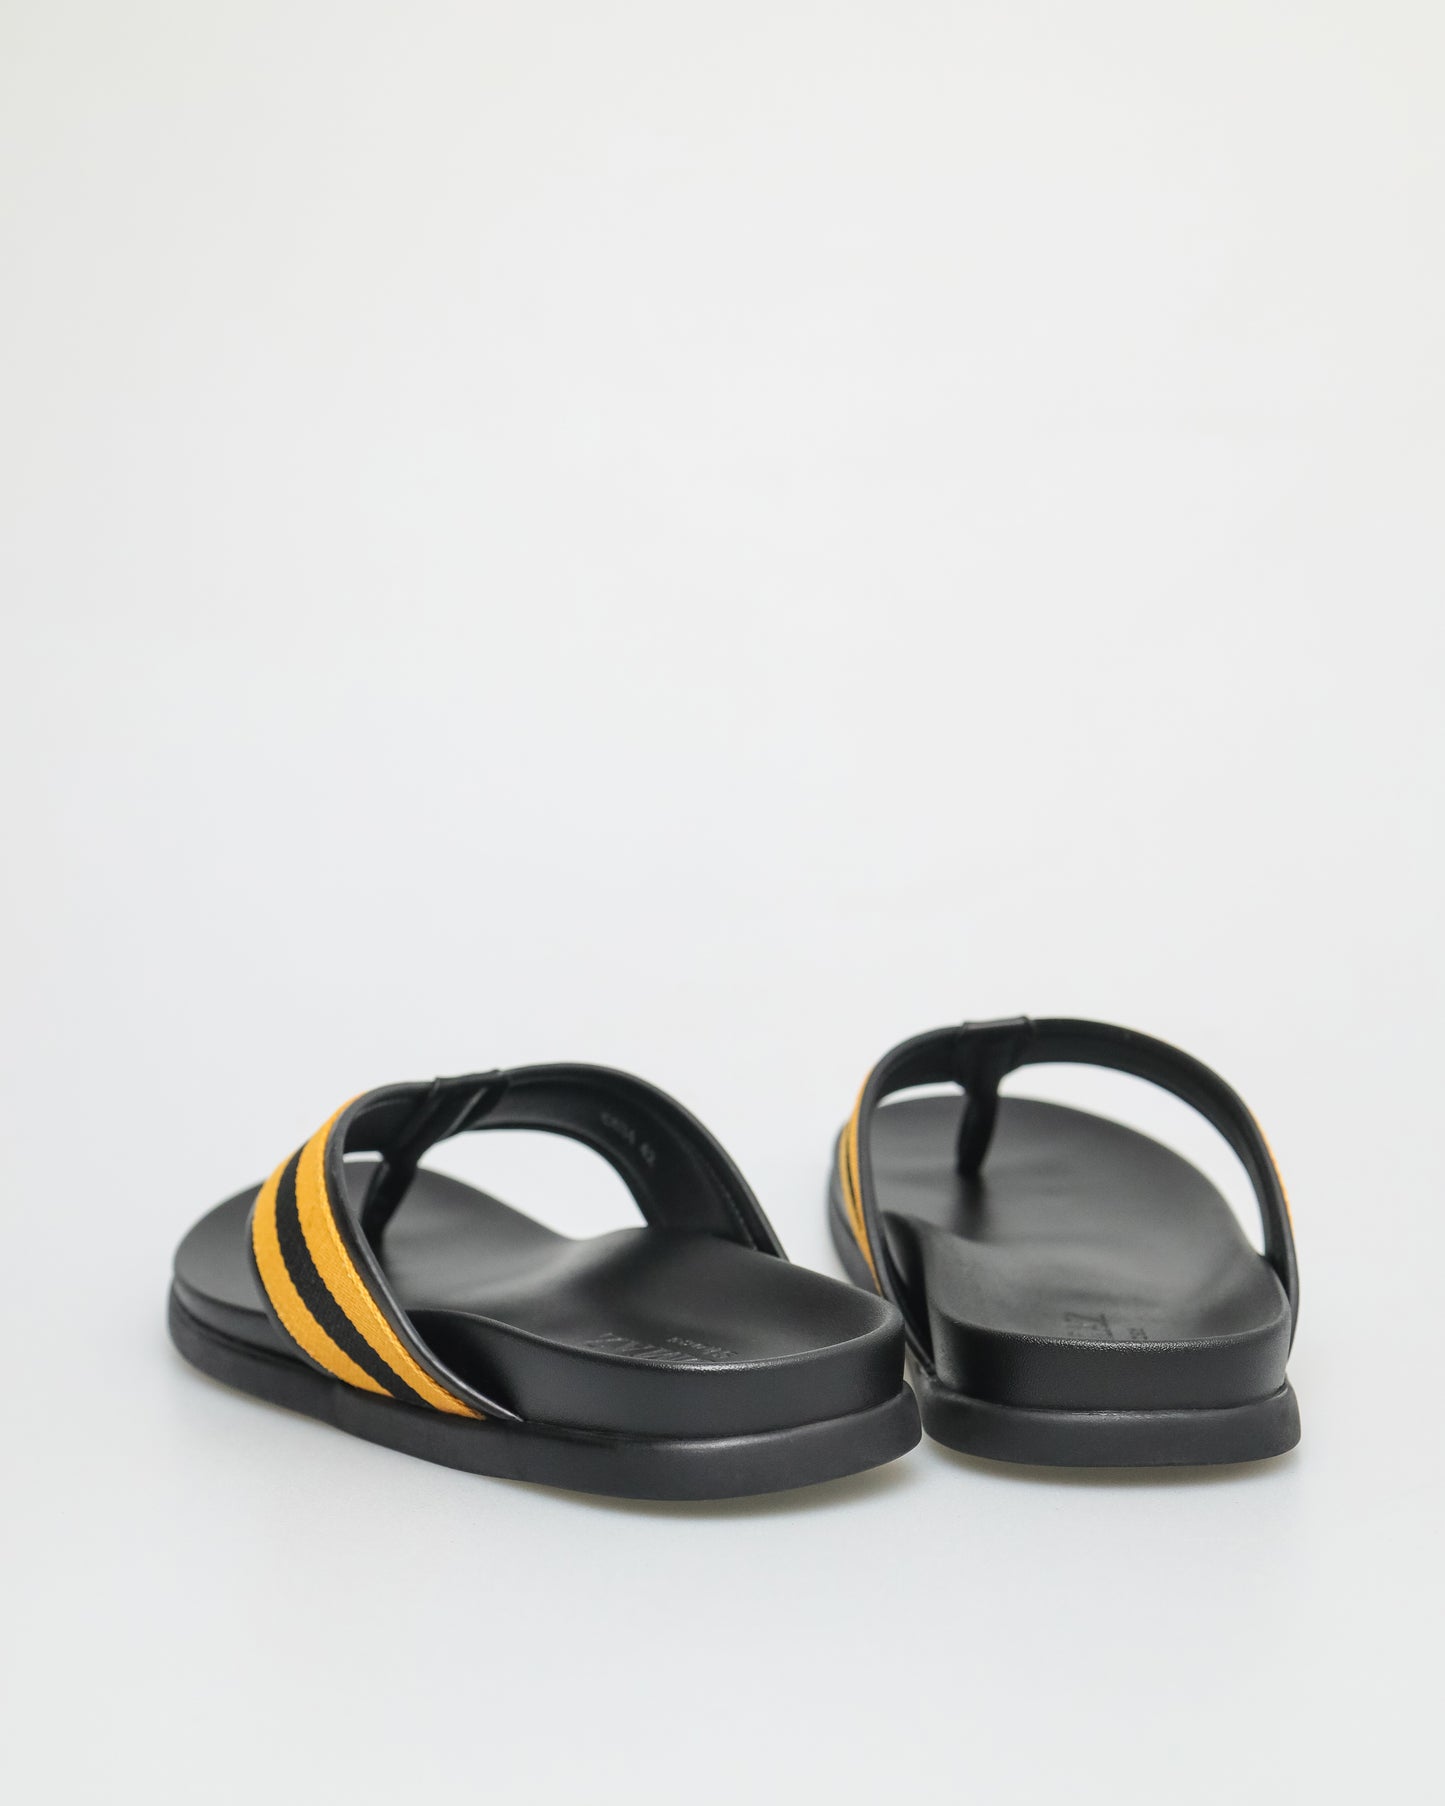 Tomaz C634 Men's Stripe Sandal (Yellow/Black)